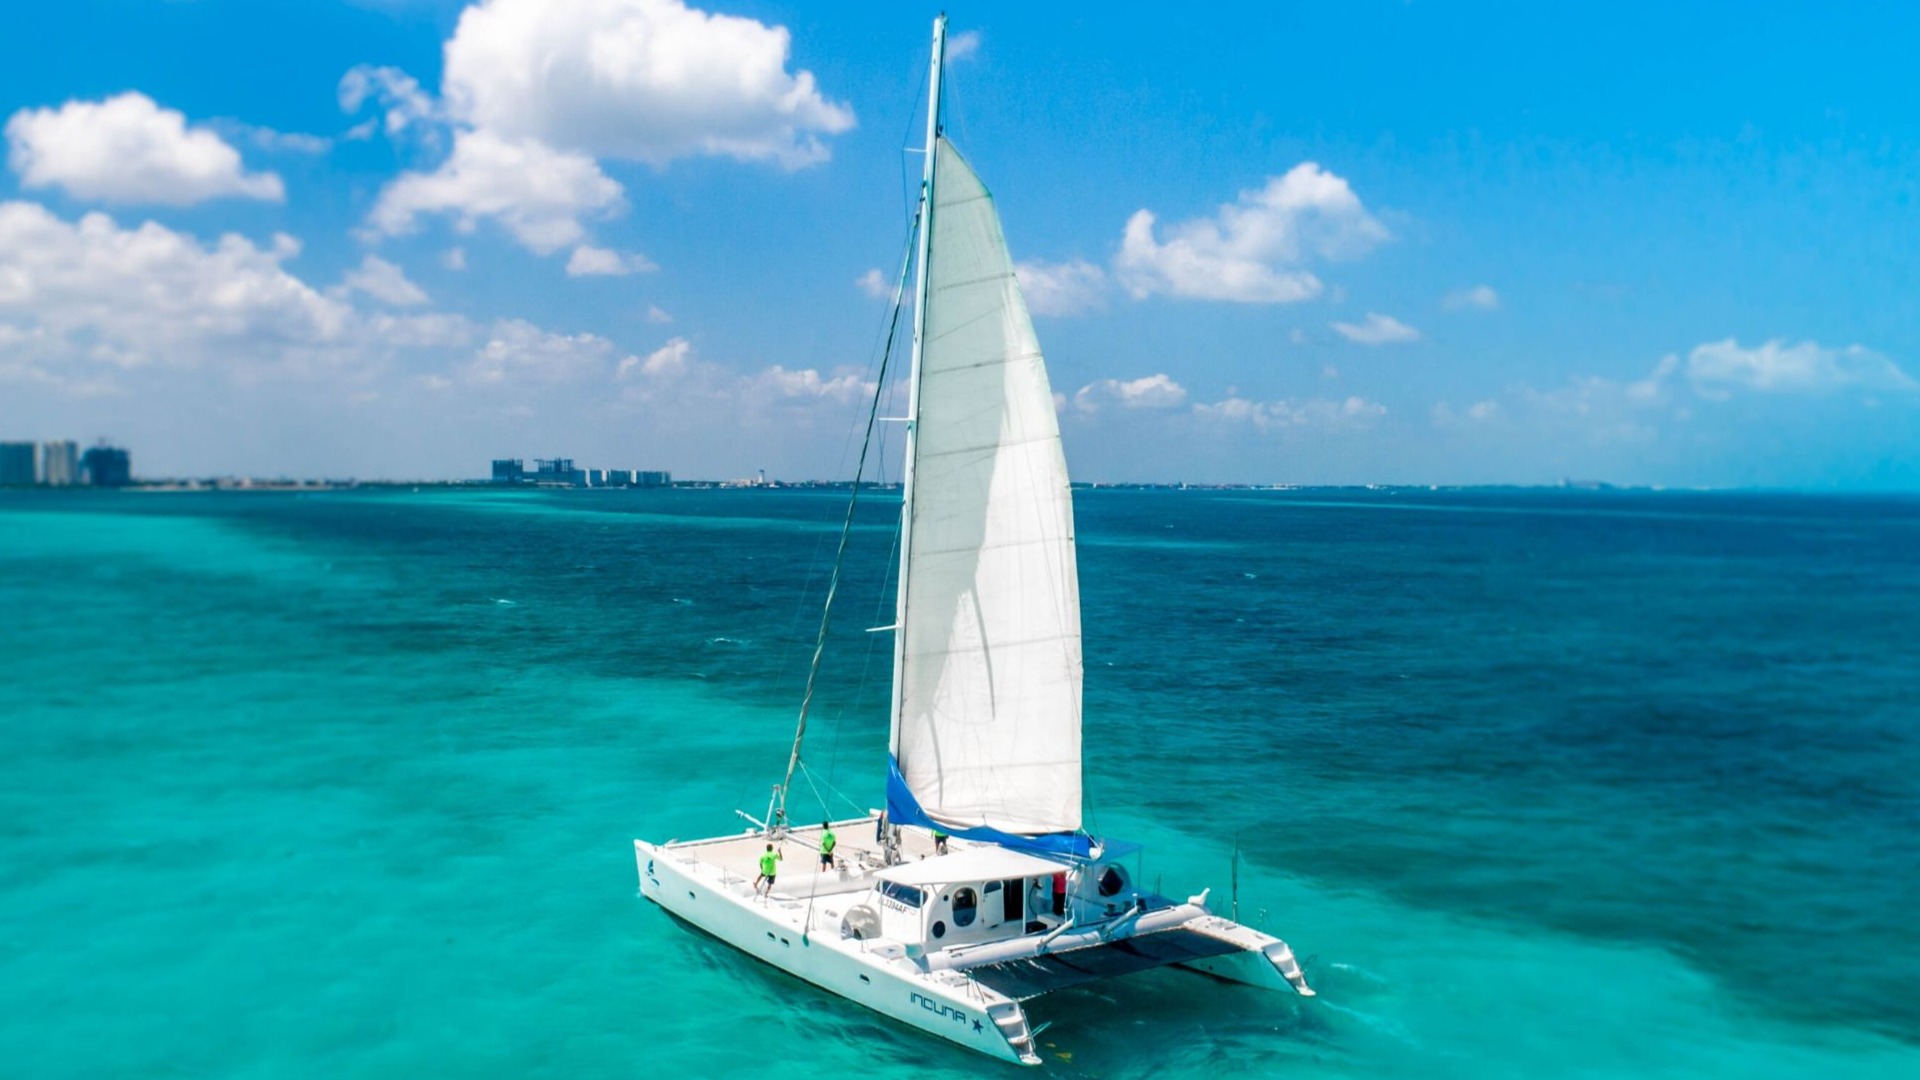 6 - LoRes - Induna - Isla Mujeres Catamaran Tour - Cancun Sailing